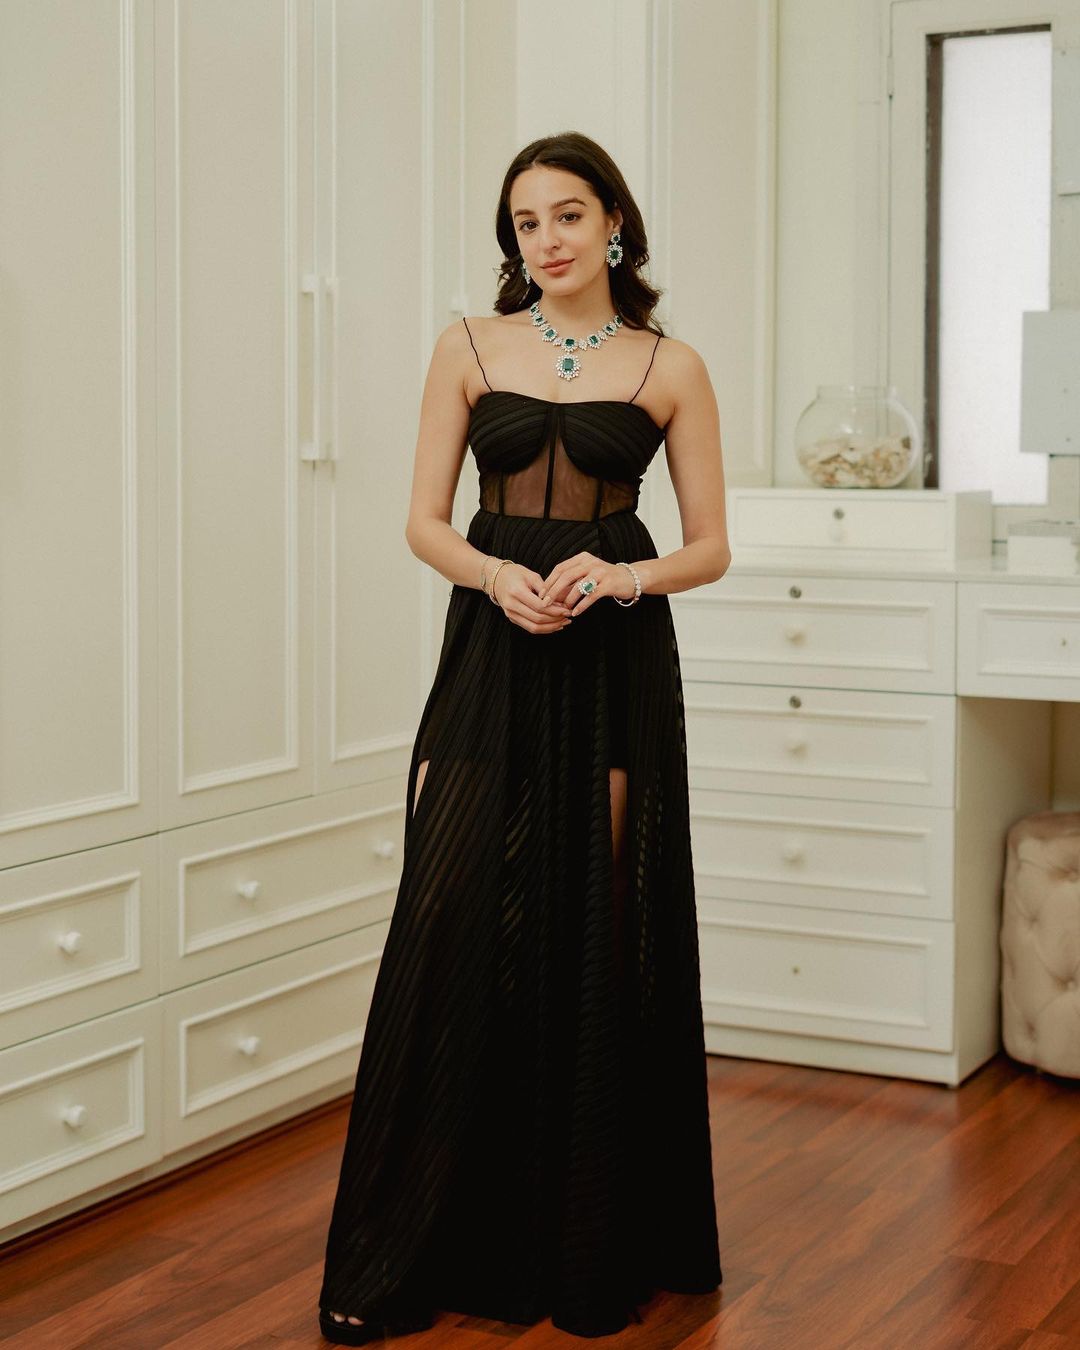 Kylie Jenner Sheer Black Dress With Waist-High Slit at CFDAs | POPSUGAR  Fashion UK